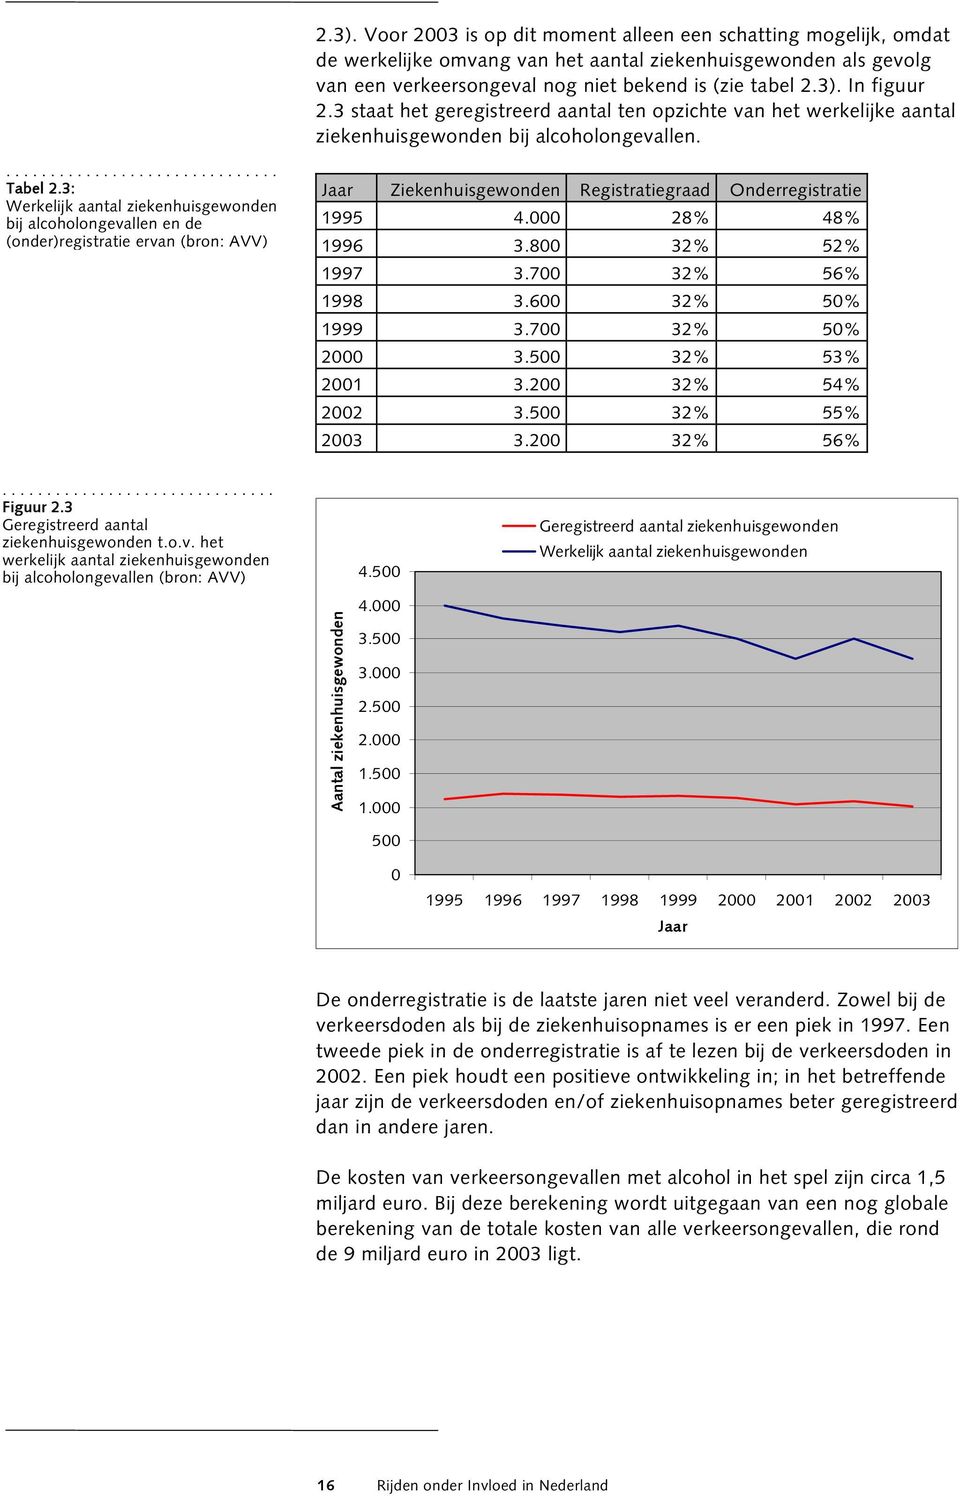 3: Werkelijk aantal ziekenhuisgewonden bij alcoholongevallen en de (onder)registratie ervan (bron: AVV) Jaar Ziekenhuisgewonden Registratiegraad Onderregistratie 1995 4.000 28% 48% 1996 3.